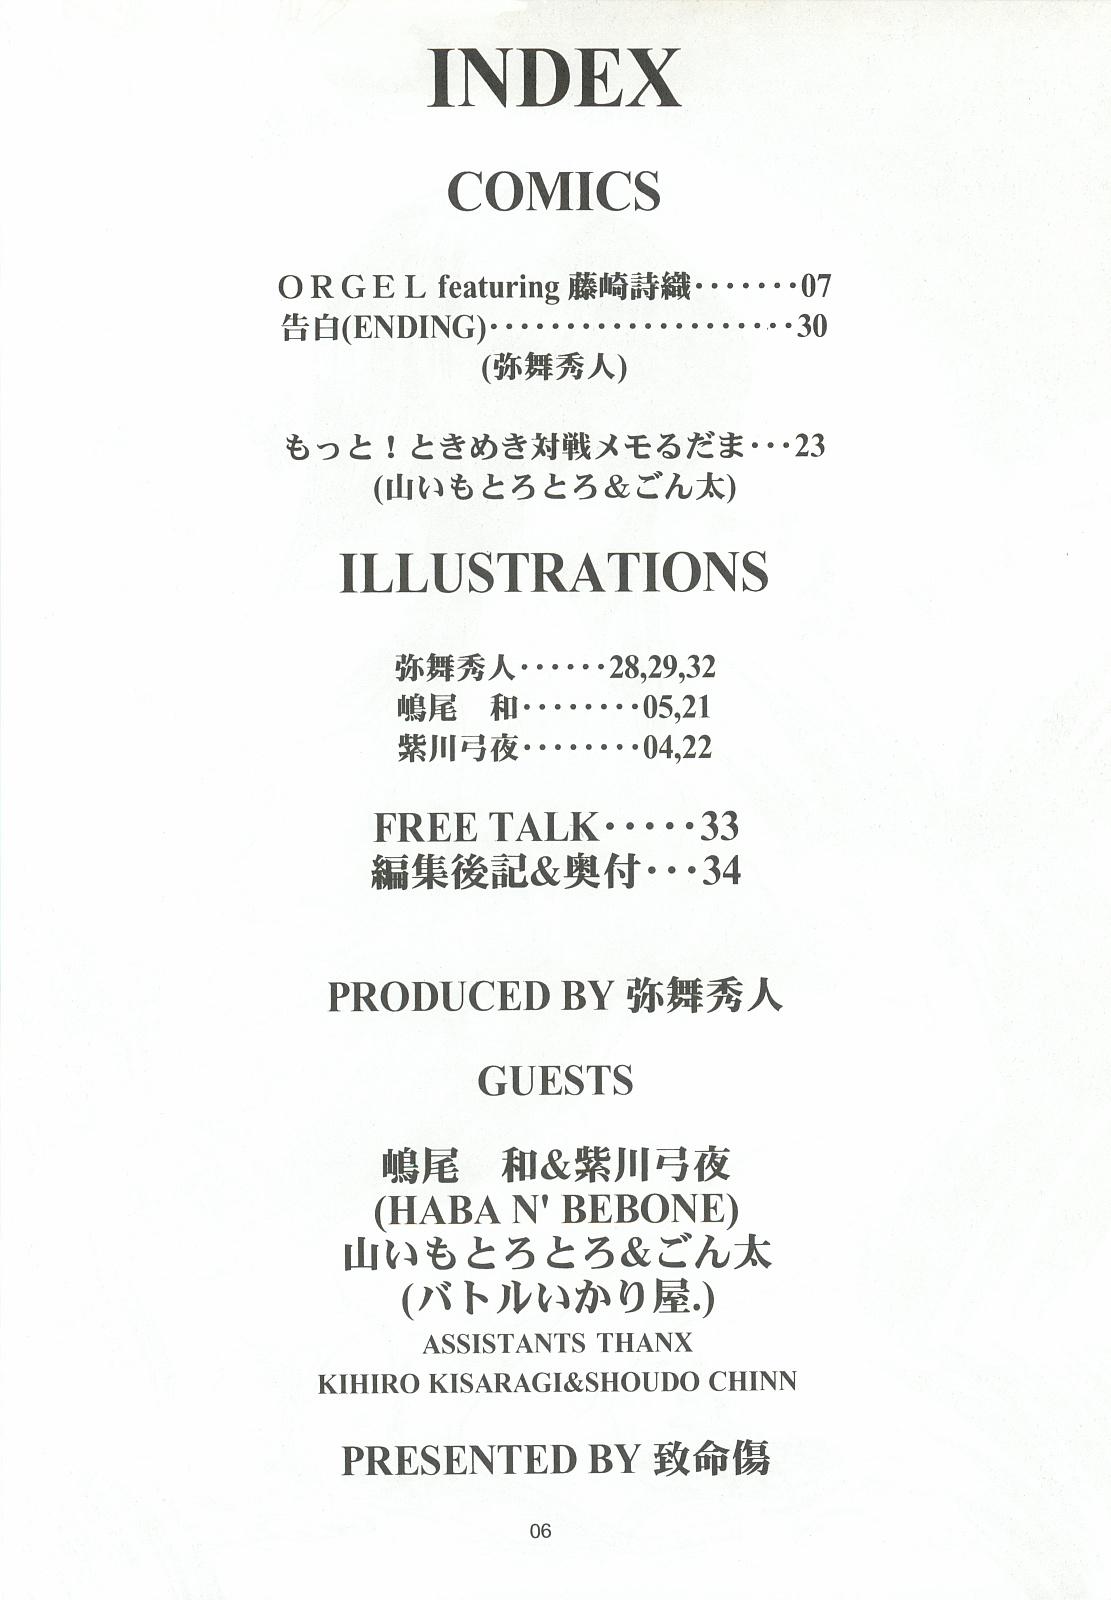 ORGEL 2 featuring Fujisaki Shiori 4